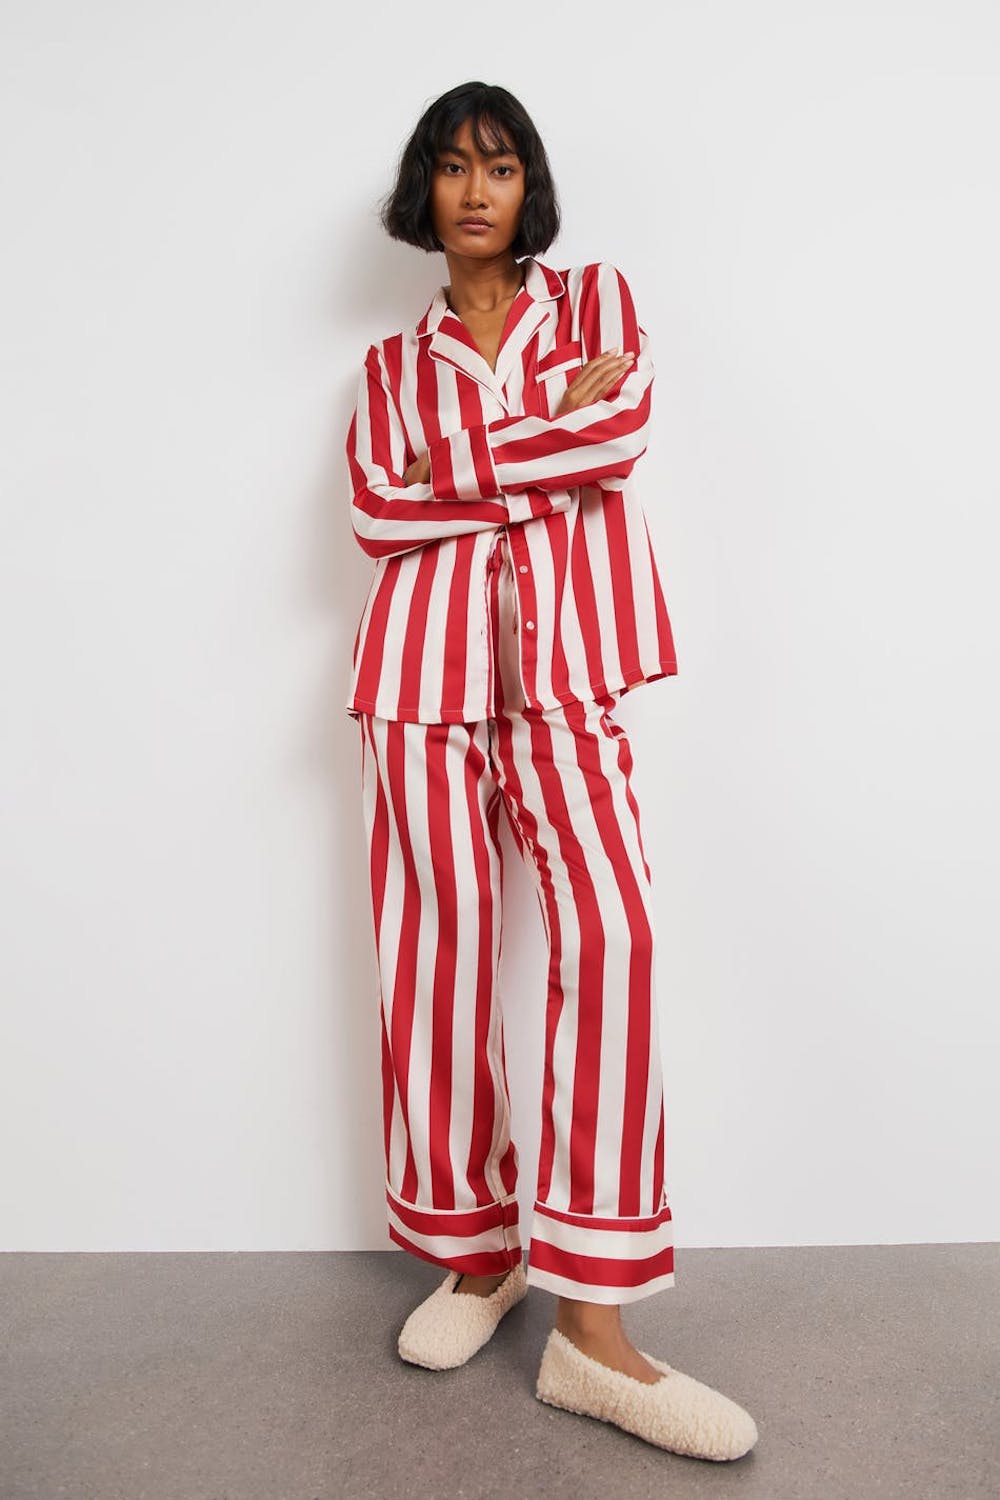 M&H toppliste: 8 fine pysjamaser til juleferien